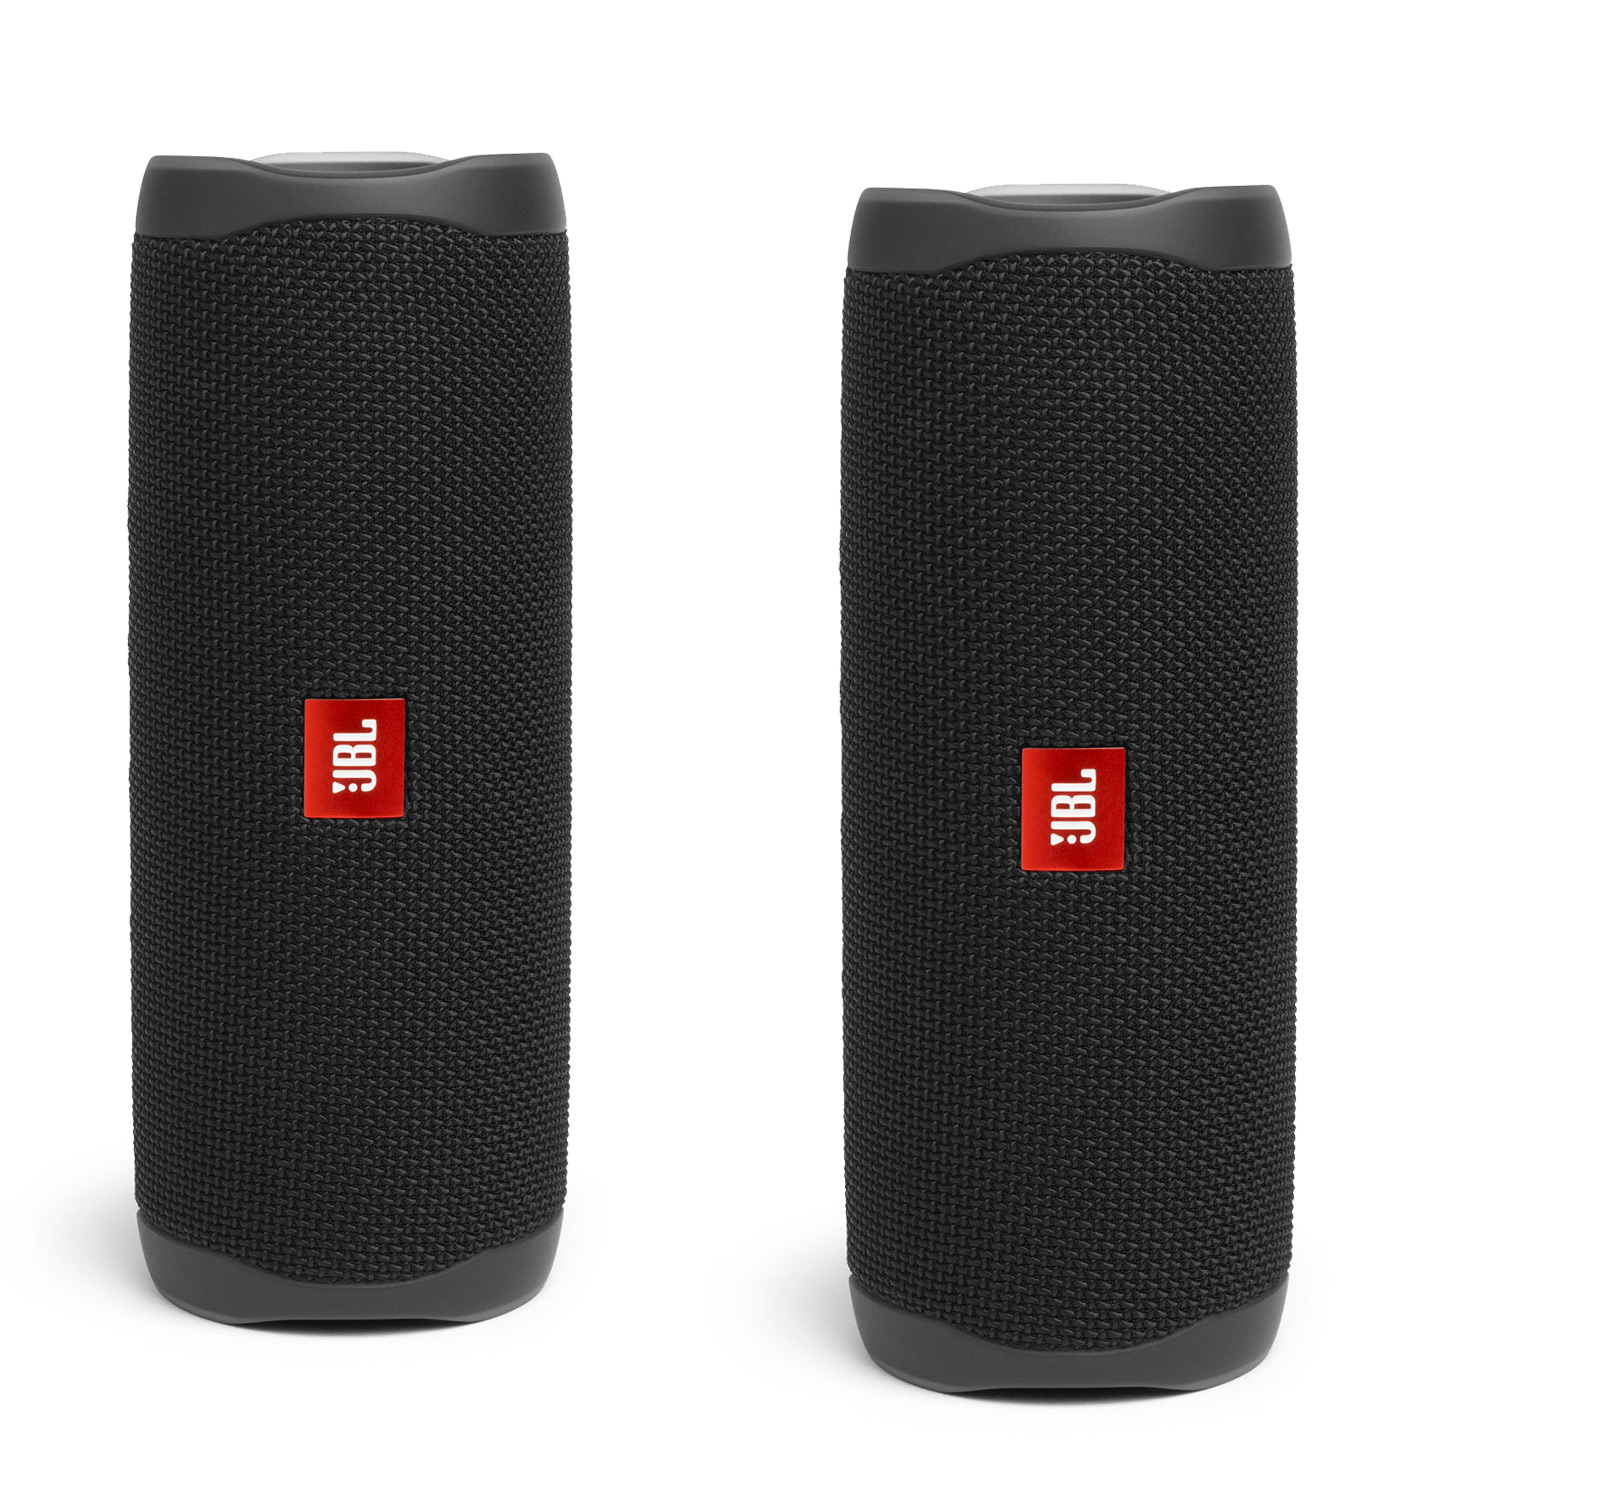 JBL Portable Bluetooth Speaker Pair with Waterproof, Black, JBLFLIP5BLKAM-PR - image 1 of 7